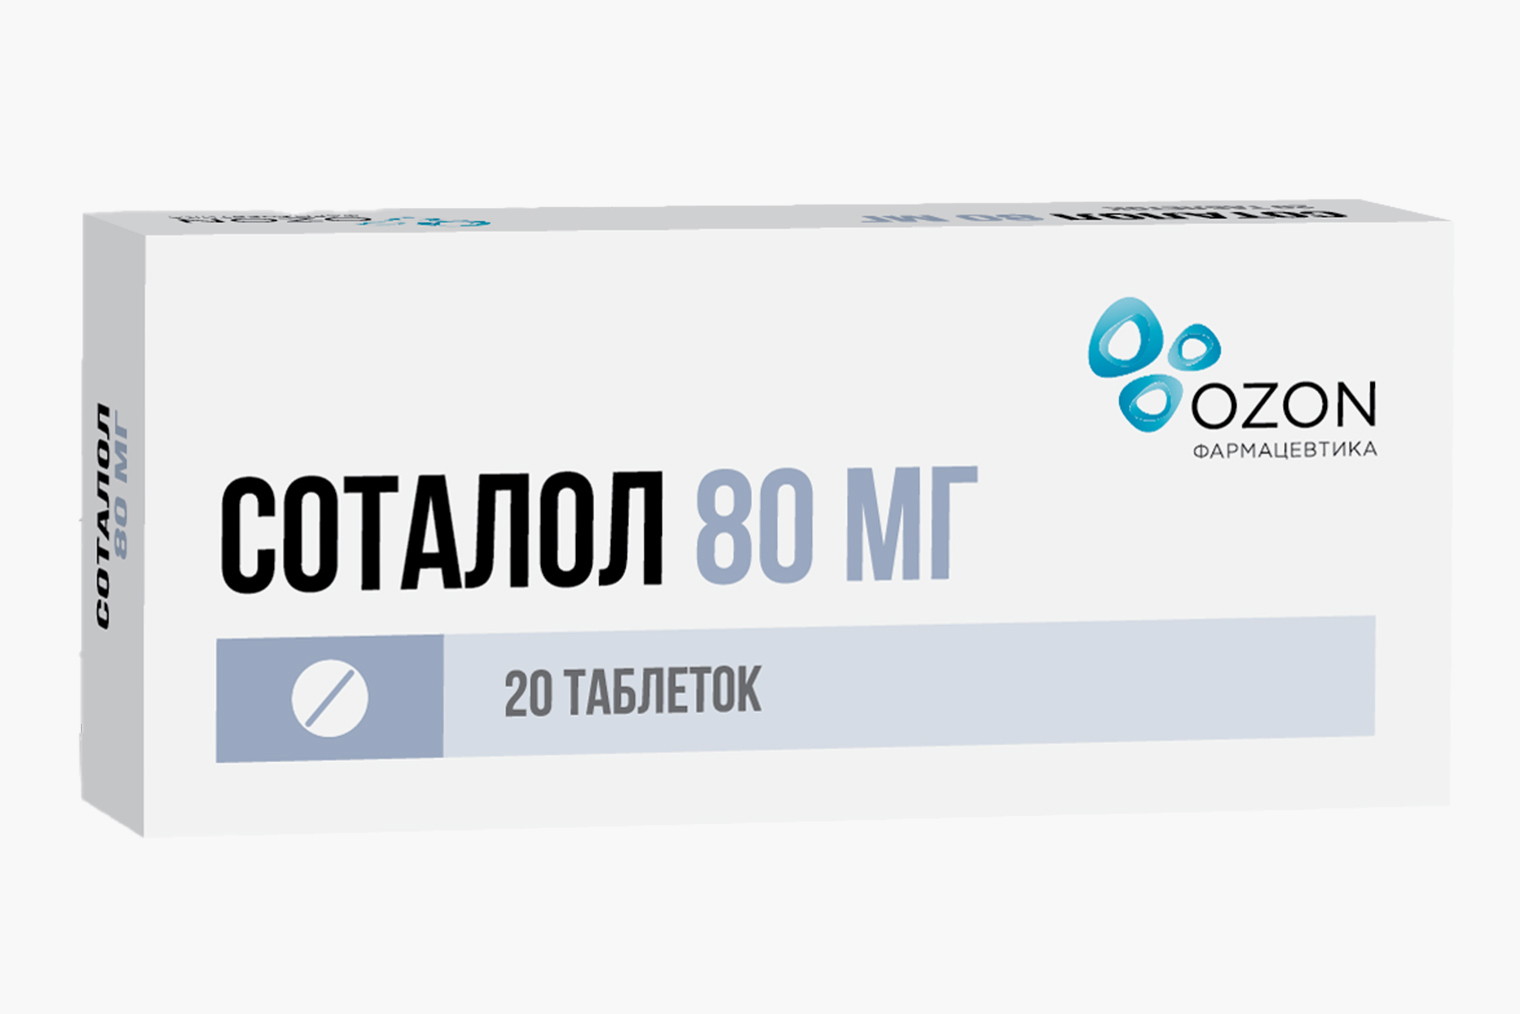 Стоимость 20 таблеток соталола в дозировке 80 мг начинается от 69 ₽